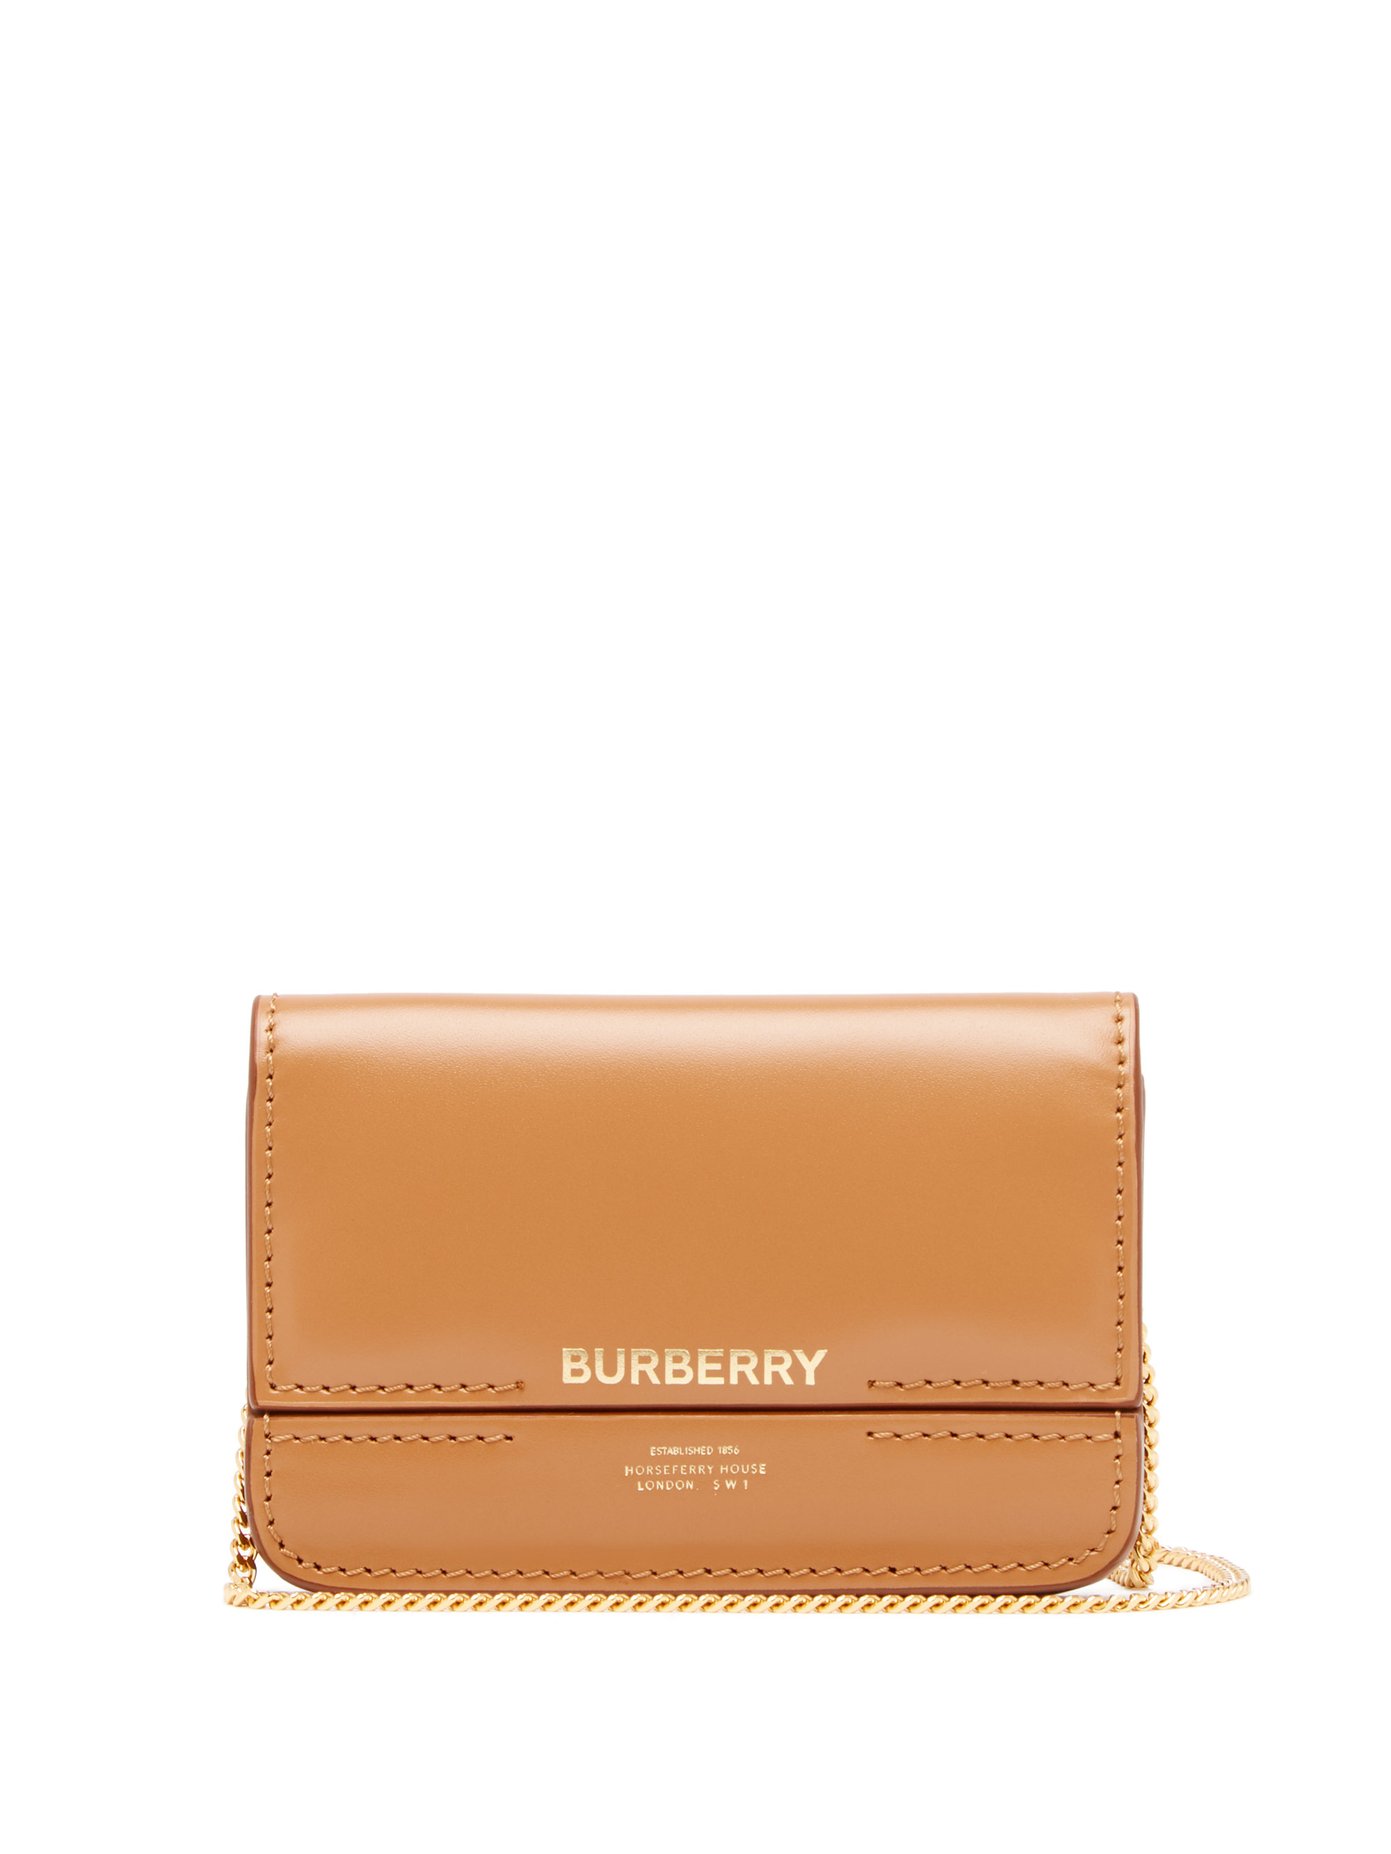 burberry wallet discount